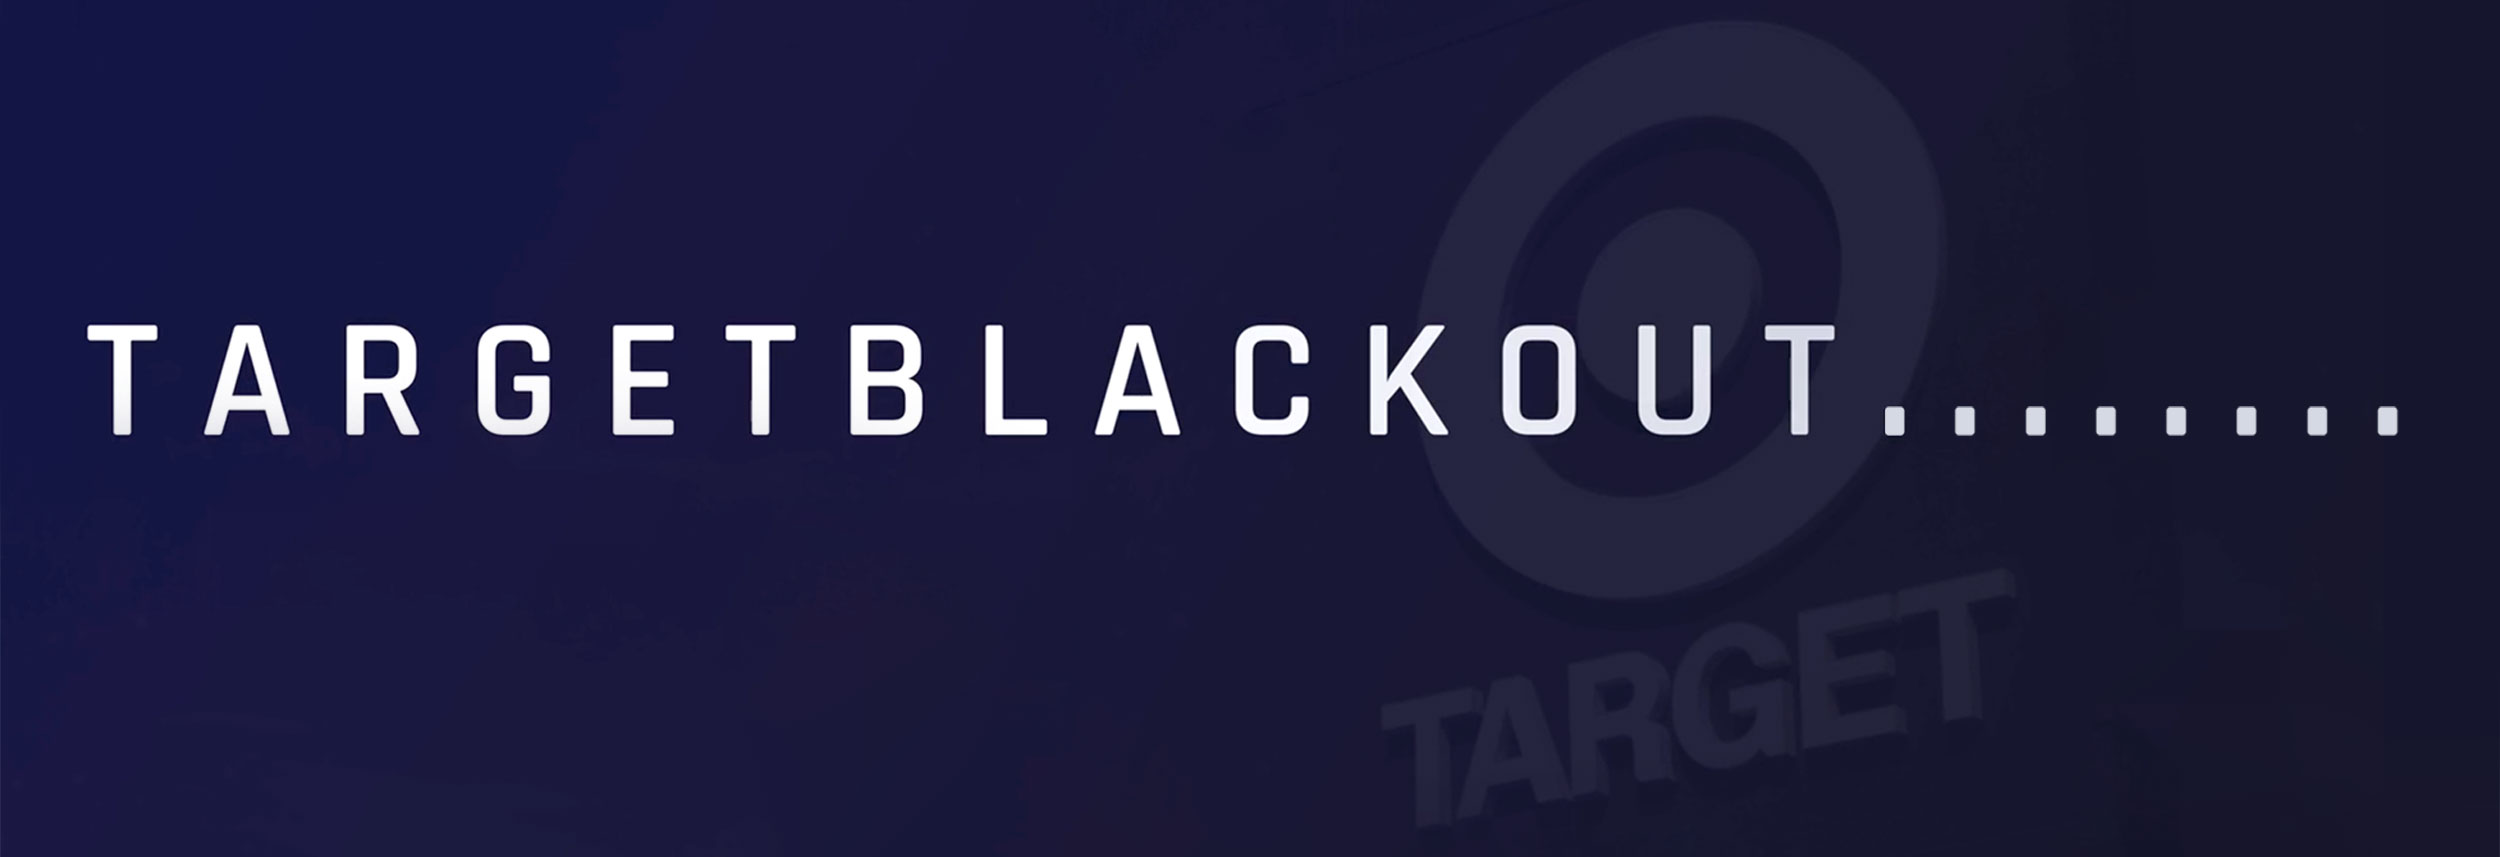 Target Blackout